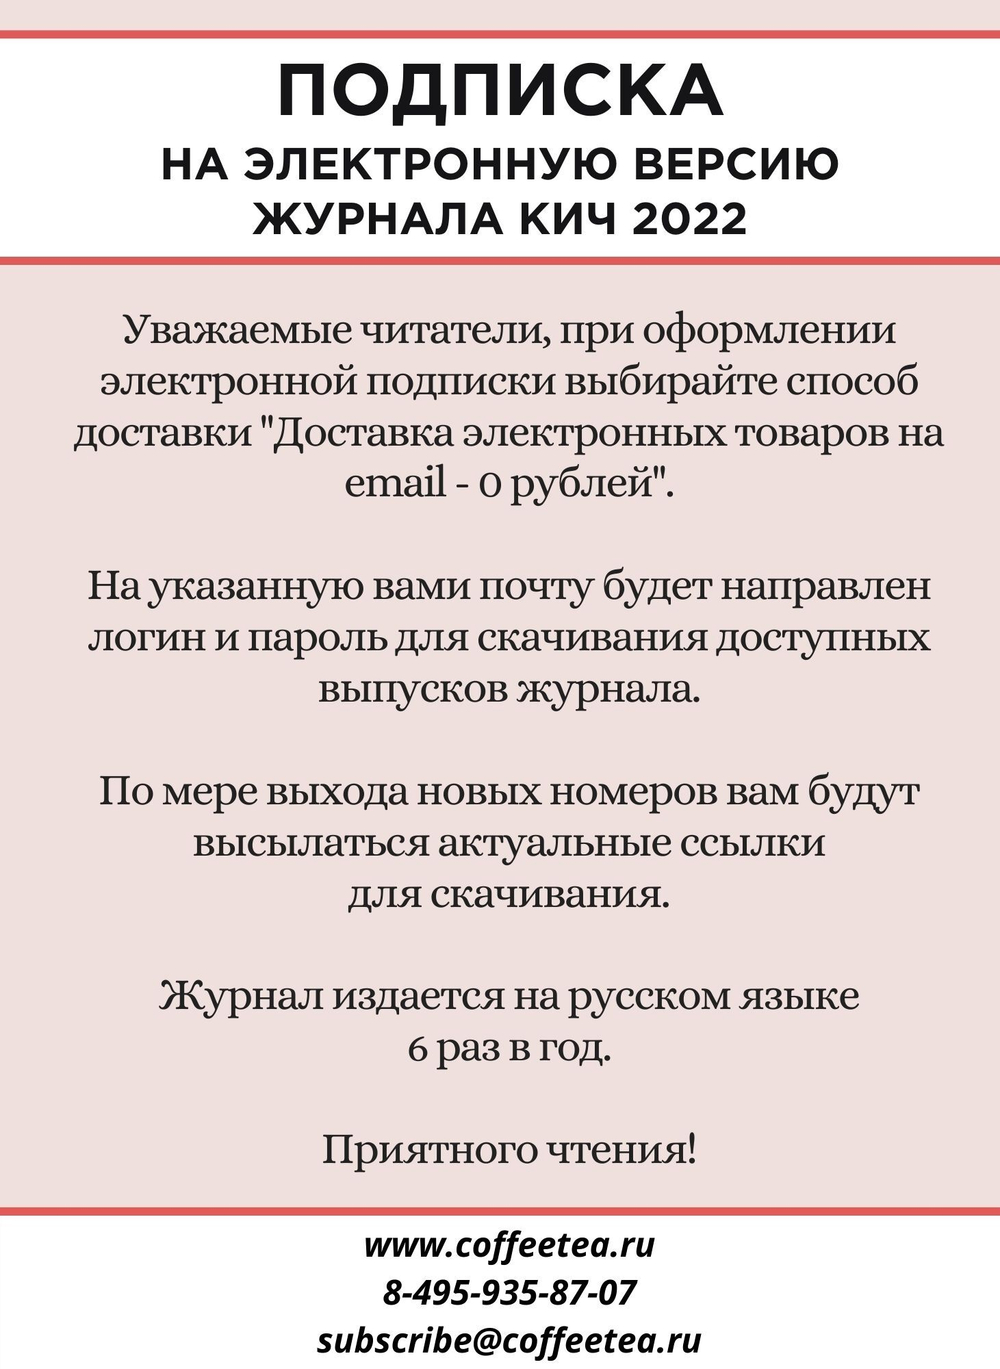 Годовая подписка на электронную версию журнала КиЧ 2022